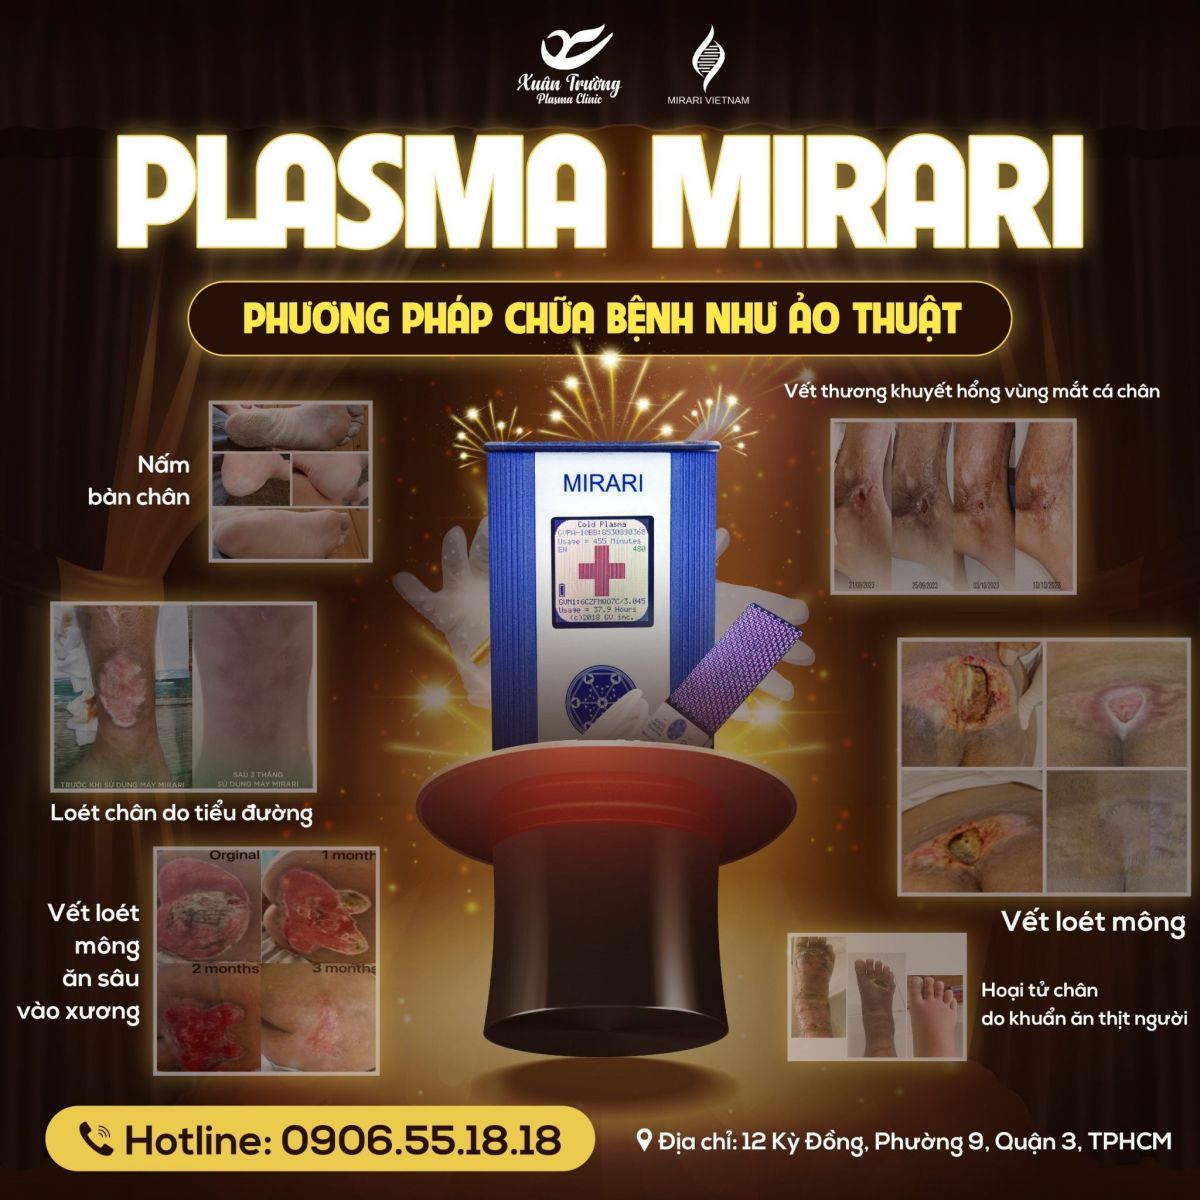 Những ca bệnh khó điều trị Mirari Plasma lạnh đã điều trị thành công được xem như một kỳ tích do đó Mirari plasma lạnh được xem như phương pháp chữa bệnh như ảo thuật.